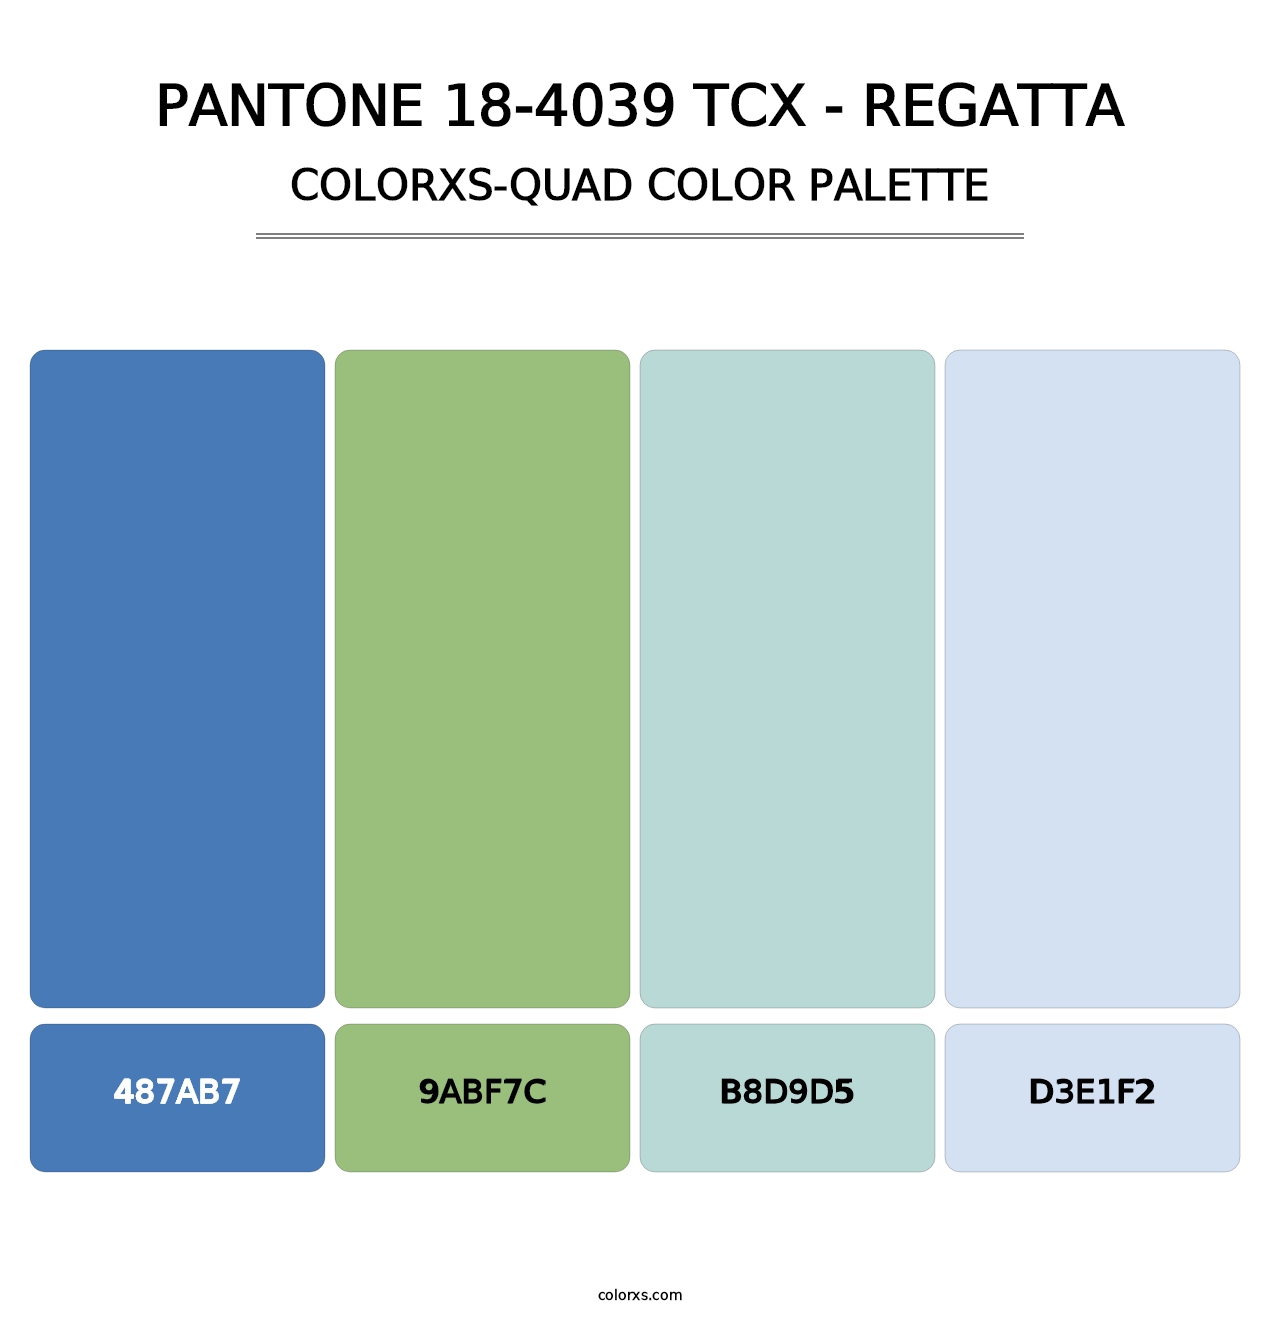 PANTONE 18-4039 TCX - Regatta - Colorxs Quad Palette